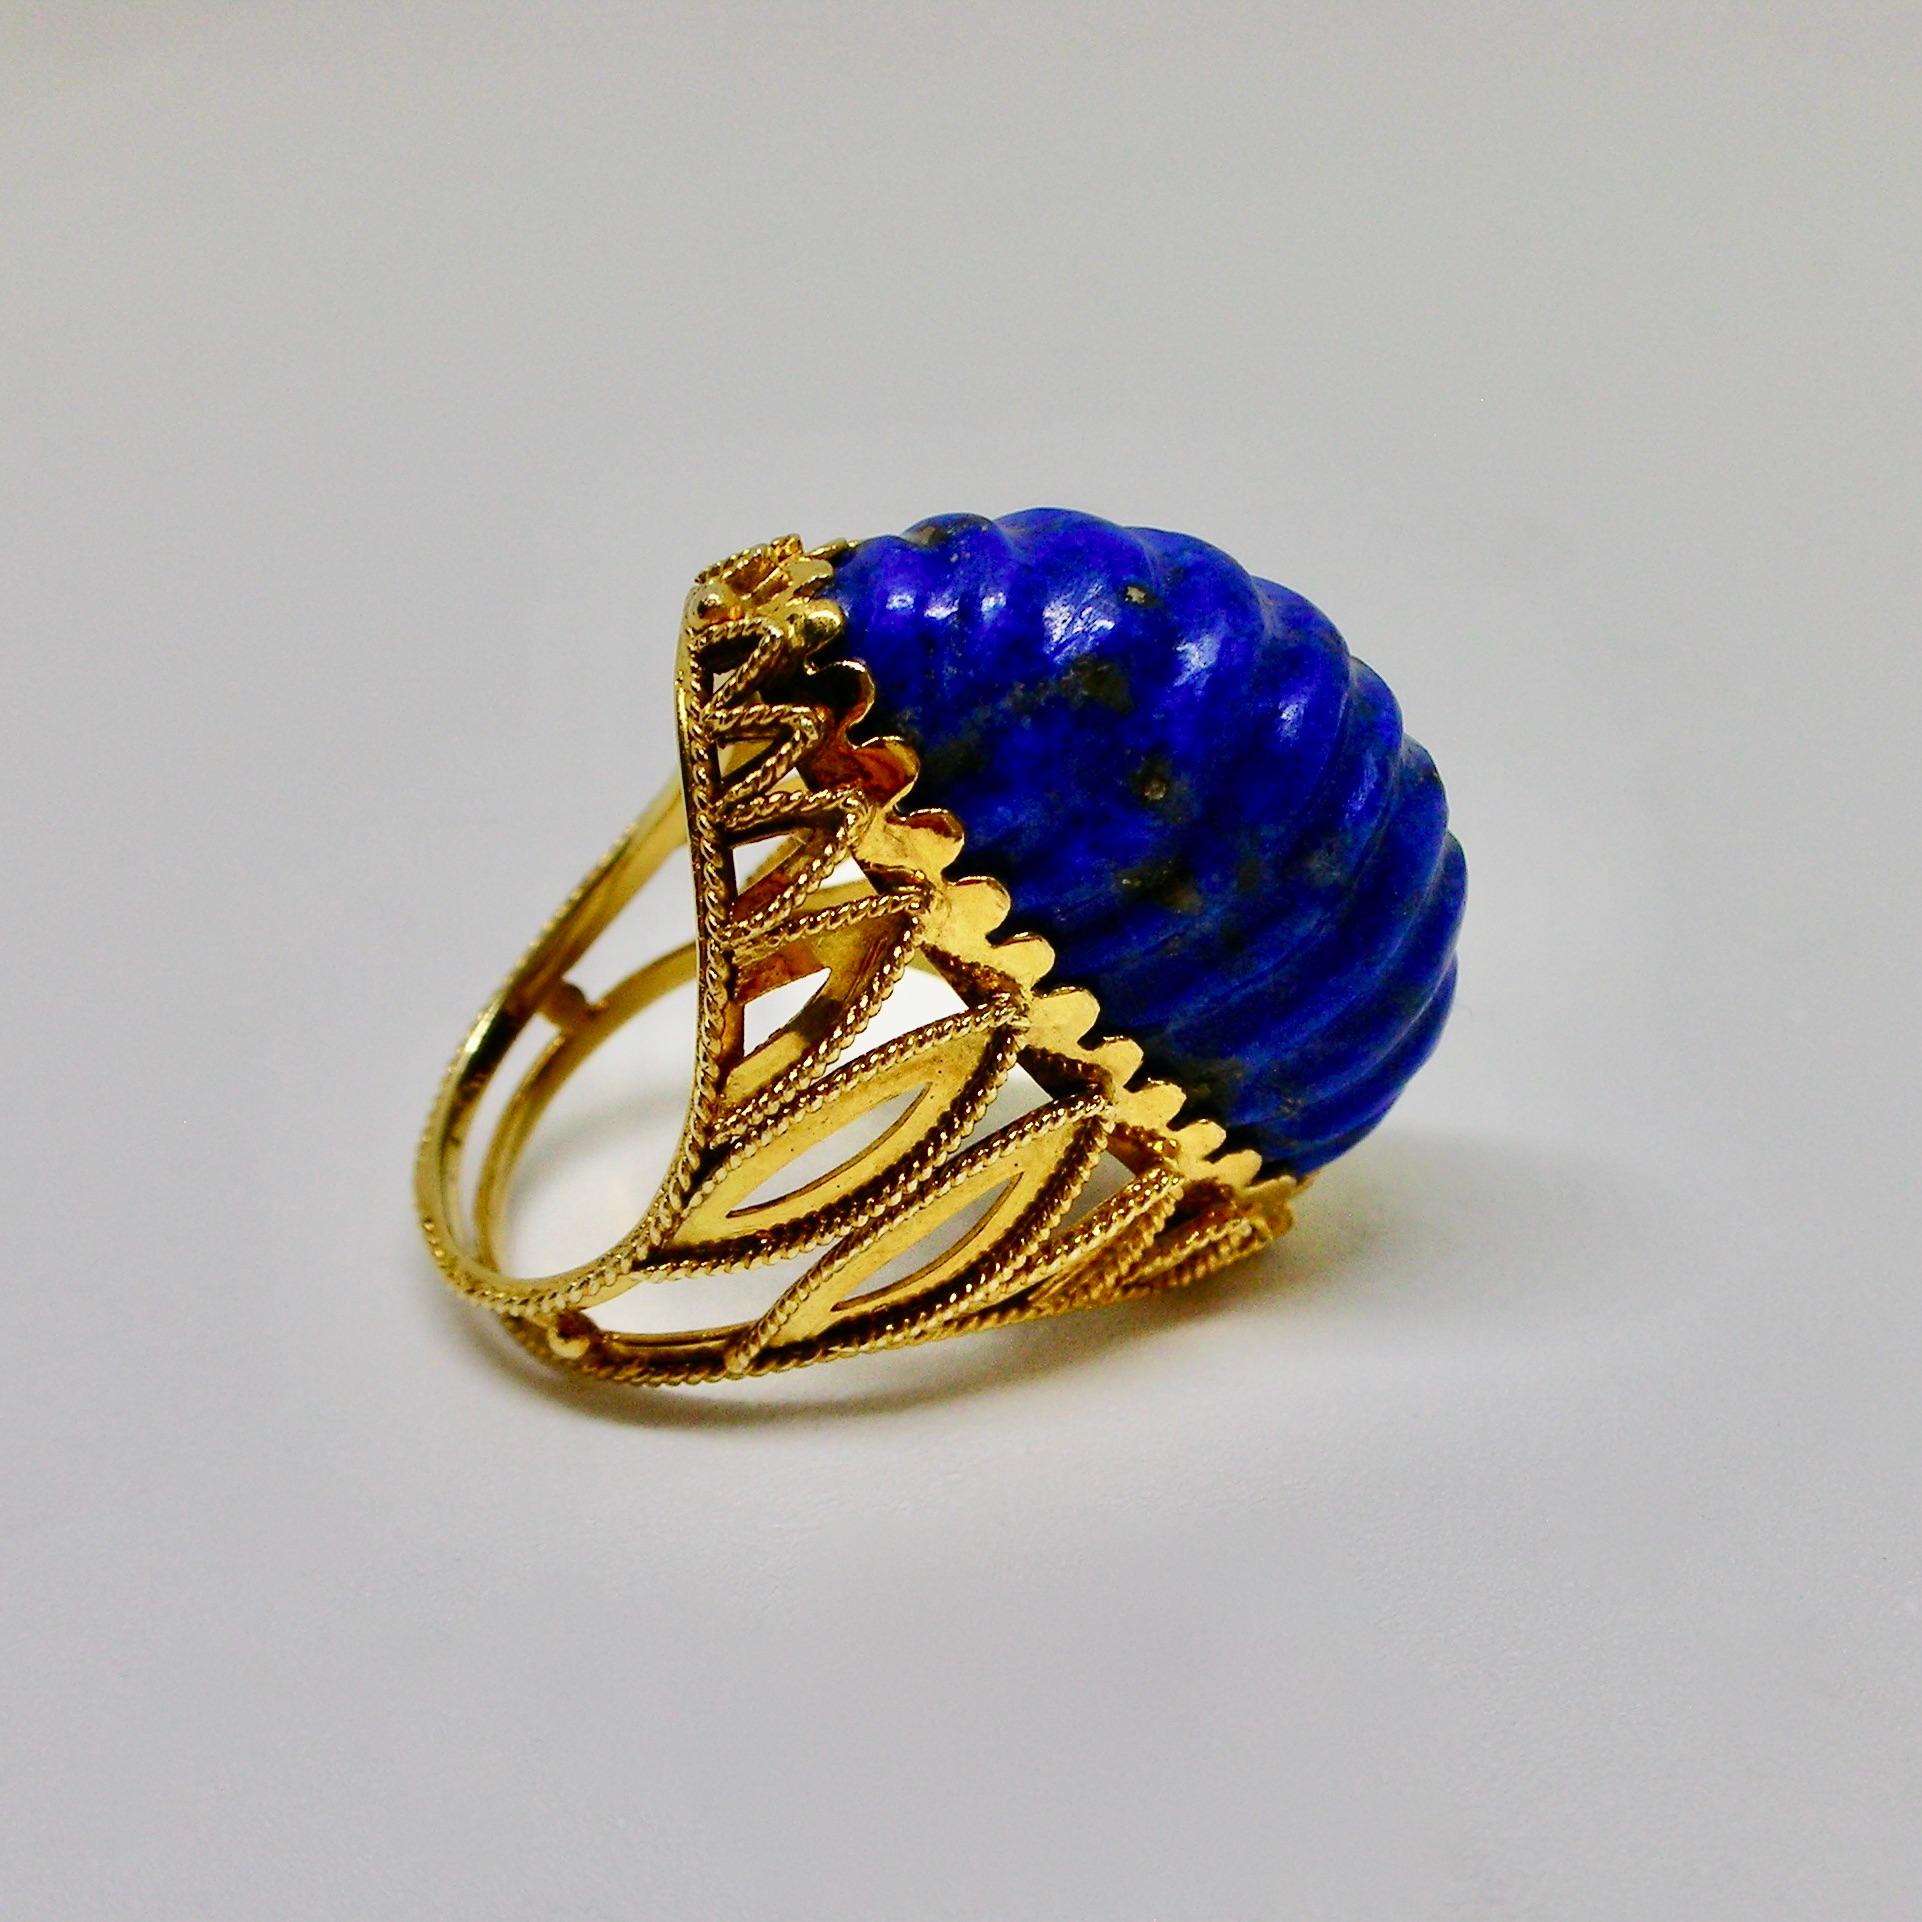 Ungewöhnlicher und einzigartiger Cocktailring aus den 1970er Jahren, gefasst in 14-karätigem Gold mit einem einzigartig geschliffenen und geformten Lapislazuli. Dieser Ring ist wahrscheinlich amerikanischer Herkunft.

